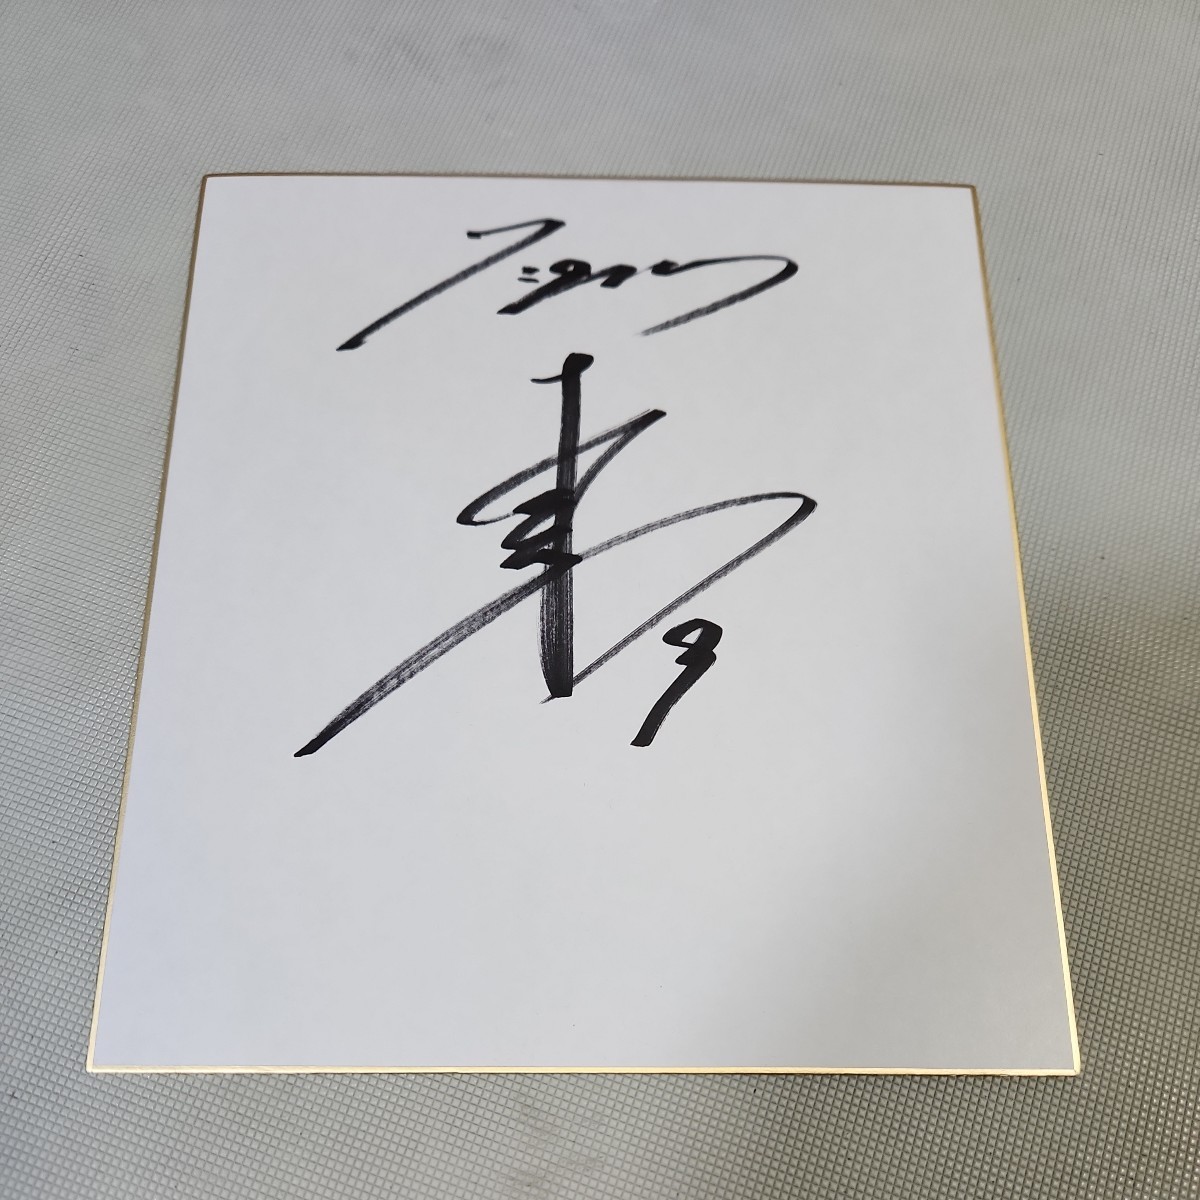 لاعب هانشين تايجرز شون تاكاياما وقع على ورق ملون, البيسبول, تذكار, البضائع ذات الصلة, لافتة